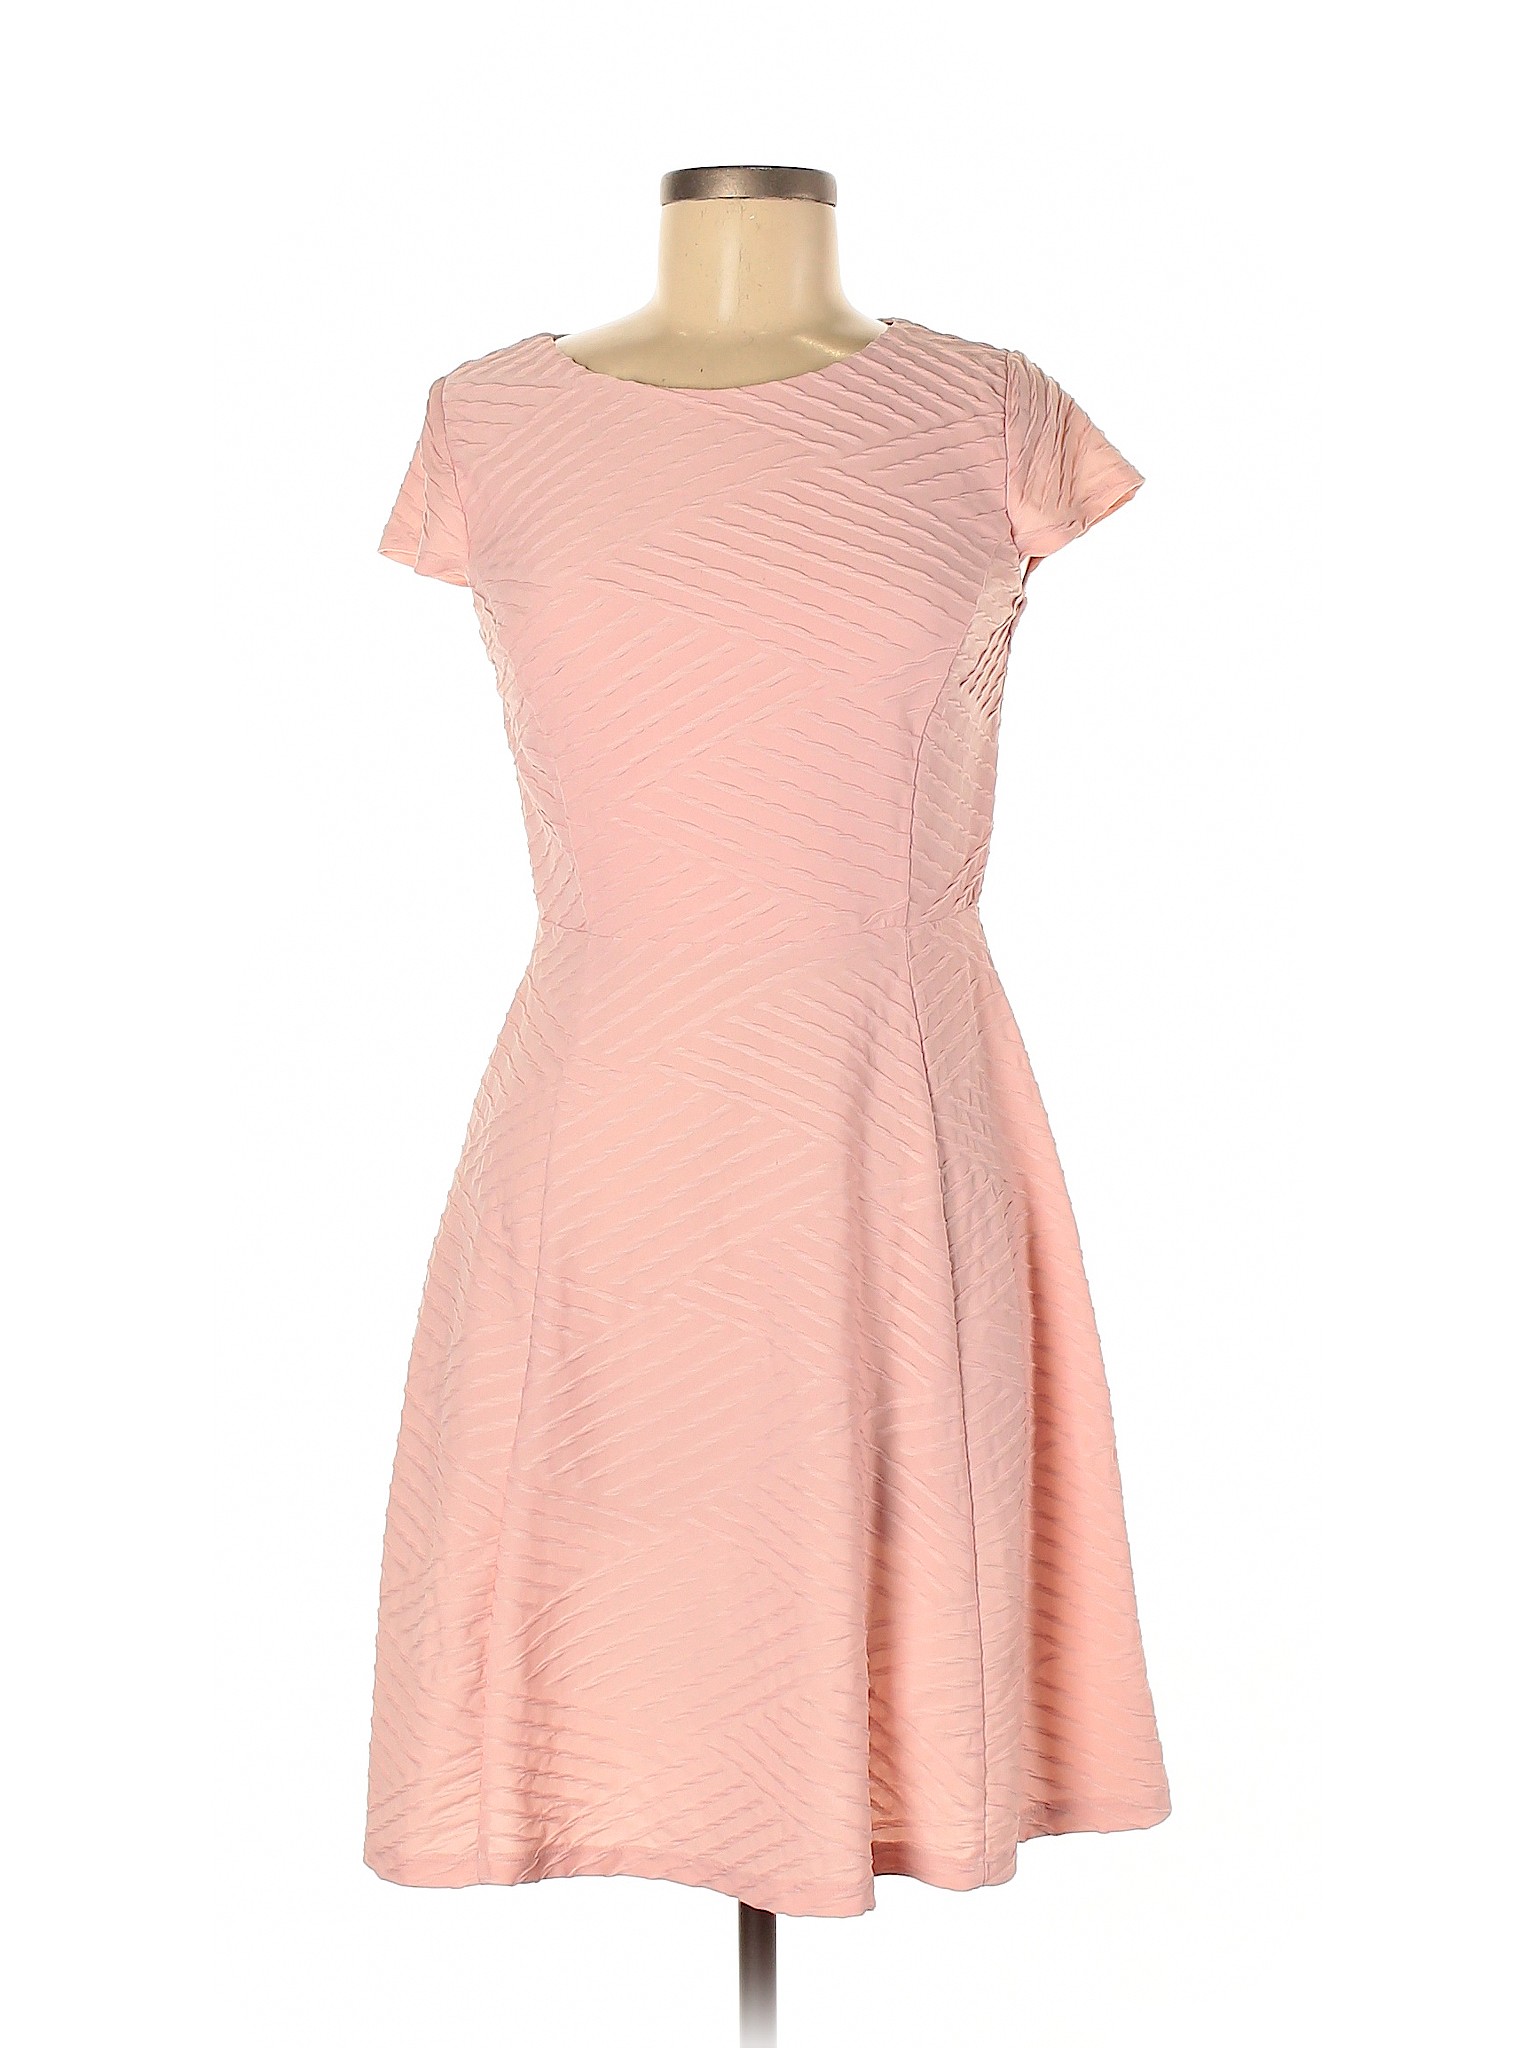 En Focus Studio Women Pink Casual Dress 6 | eBay